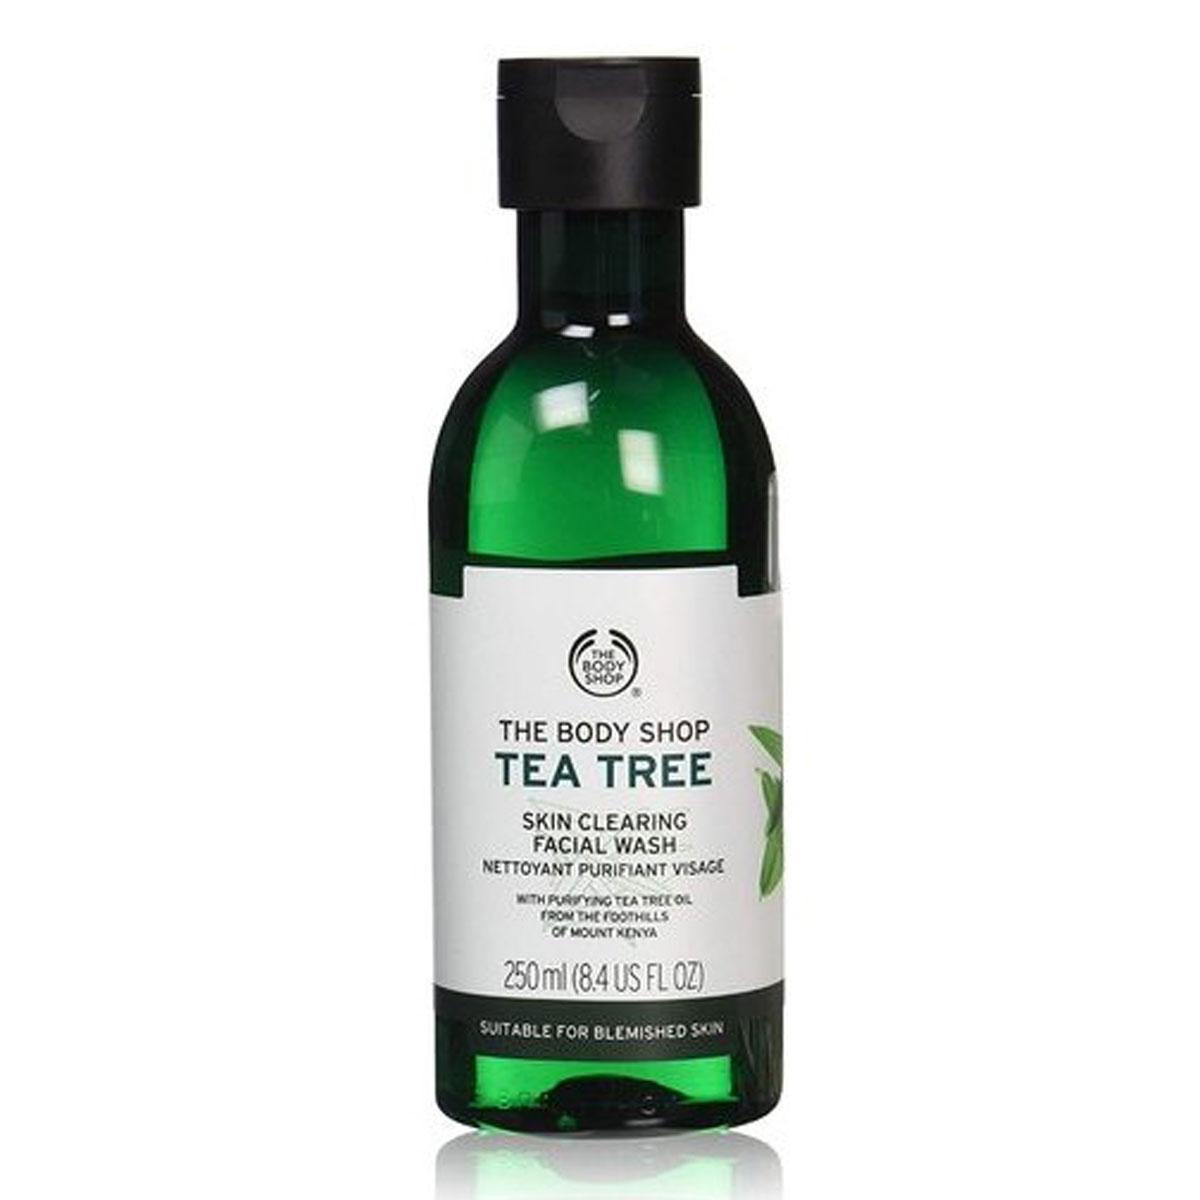 ژل شستشوی تی تری - tea tree facial wash